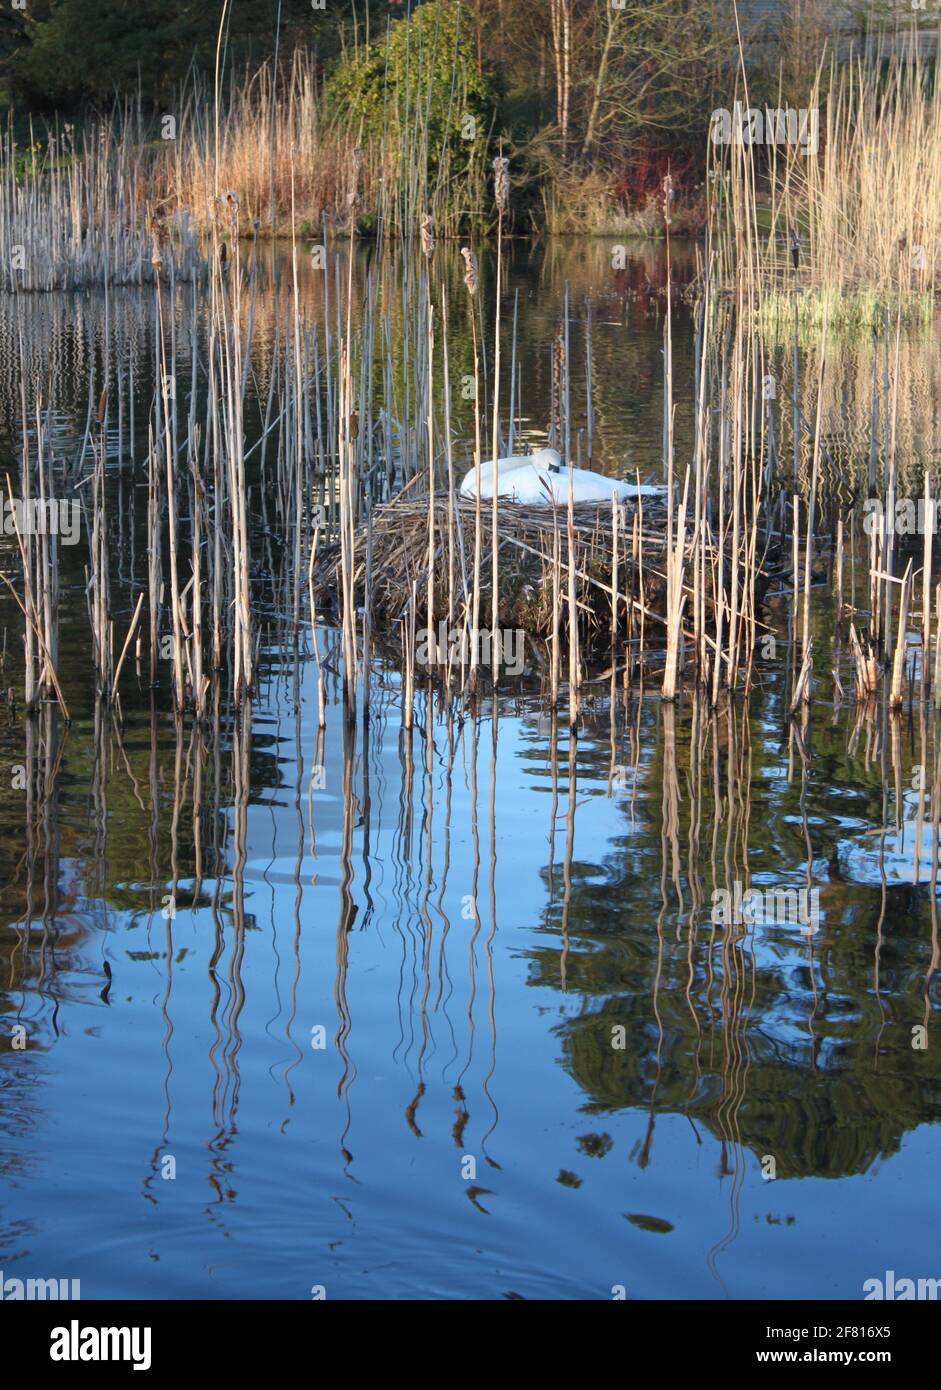 Stumme Schwäne brüten auf schottischem See in einer städtischen Umgebung. Weißer Schwan brütet im Frühling unter dem Schilf des Sees. Wilde Tiere im Frühling gefangen. Stockfoto